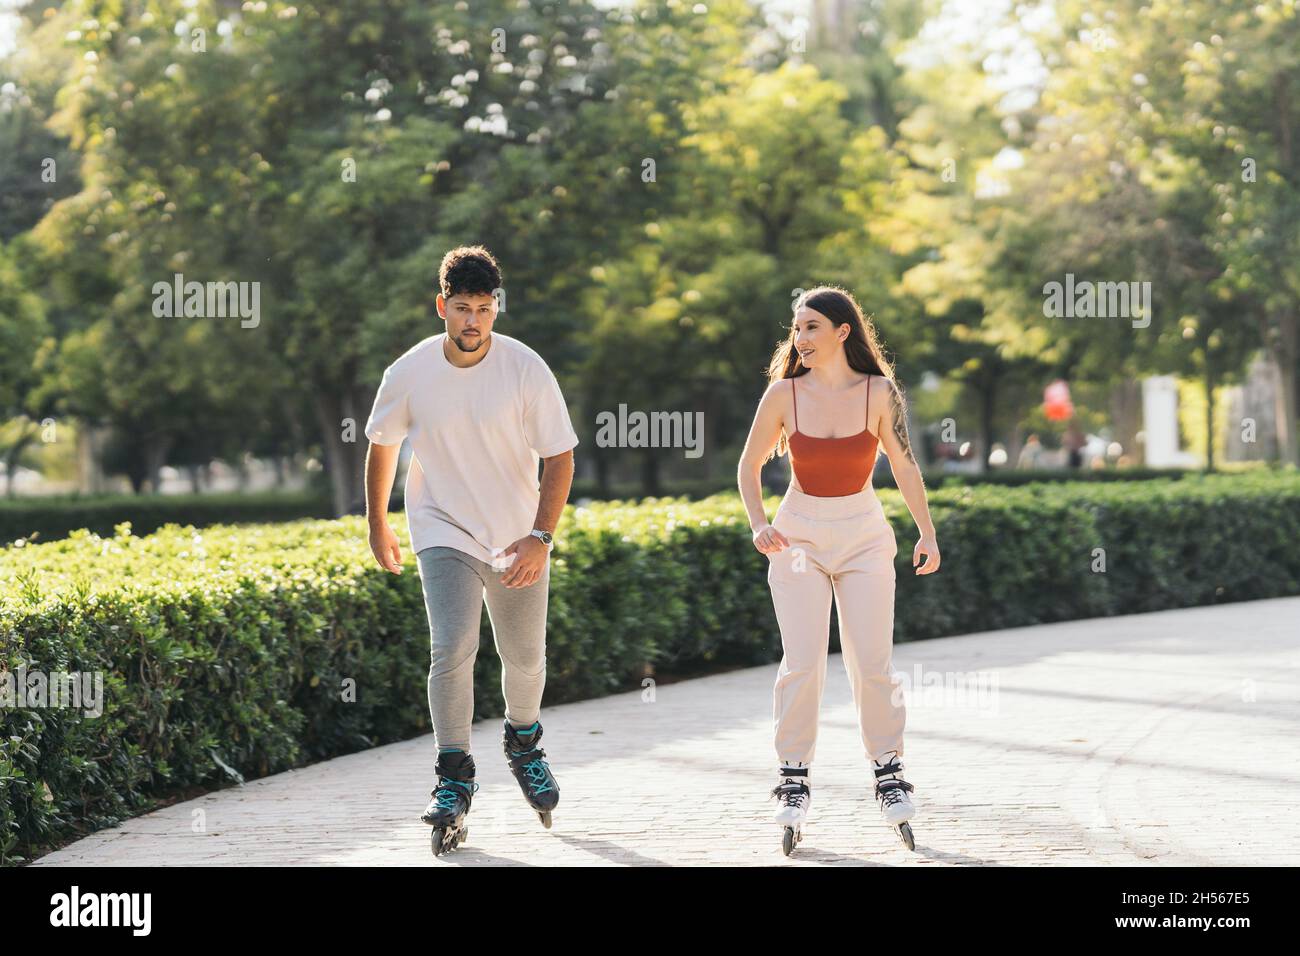 Junge Leute, die in einem Park mit Inline-Skates Schlittschuhe skaten, entspannten sich Stockfoto